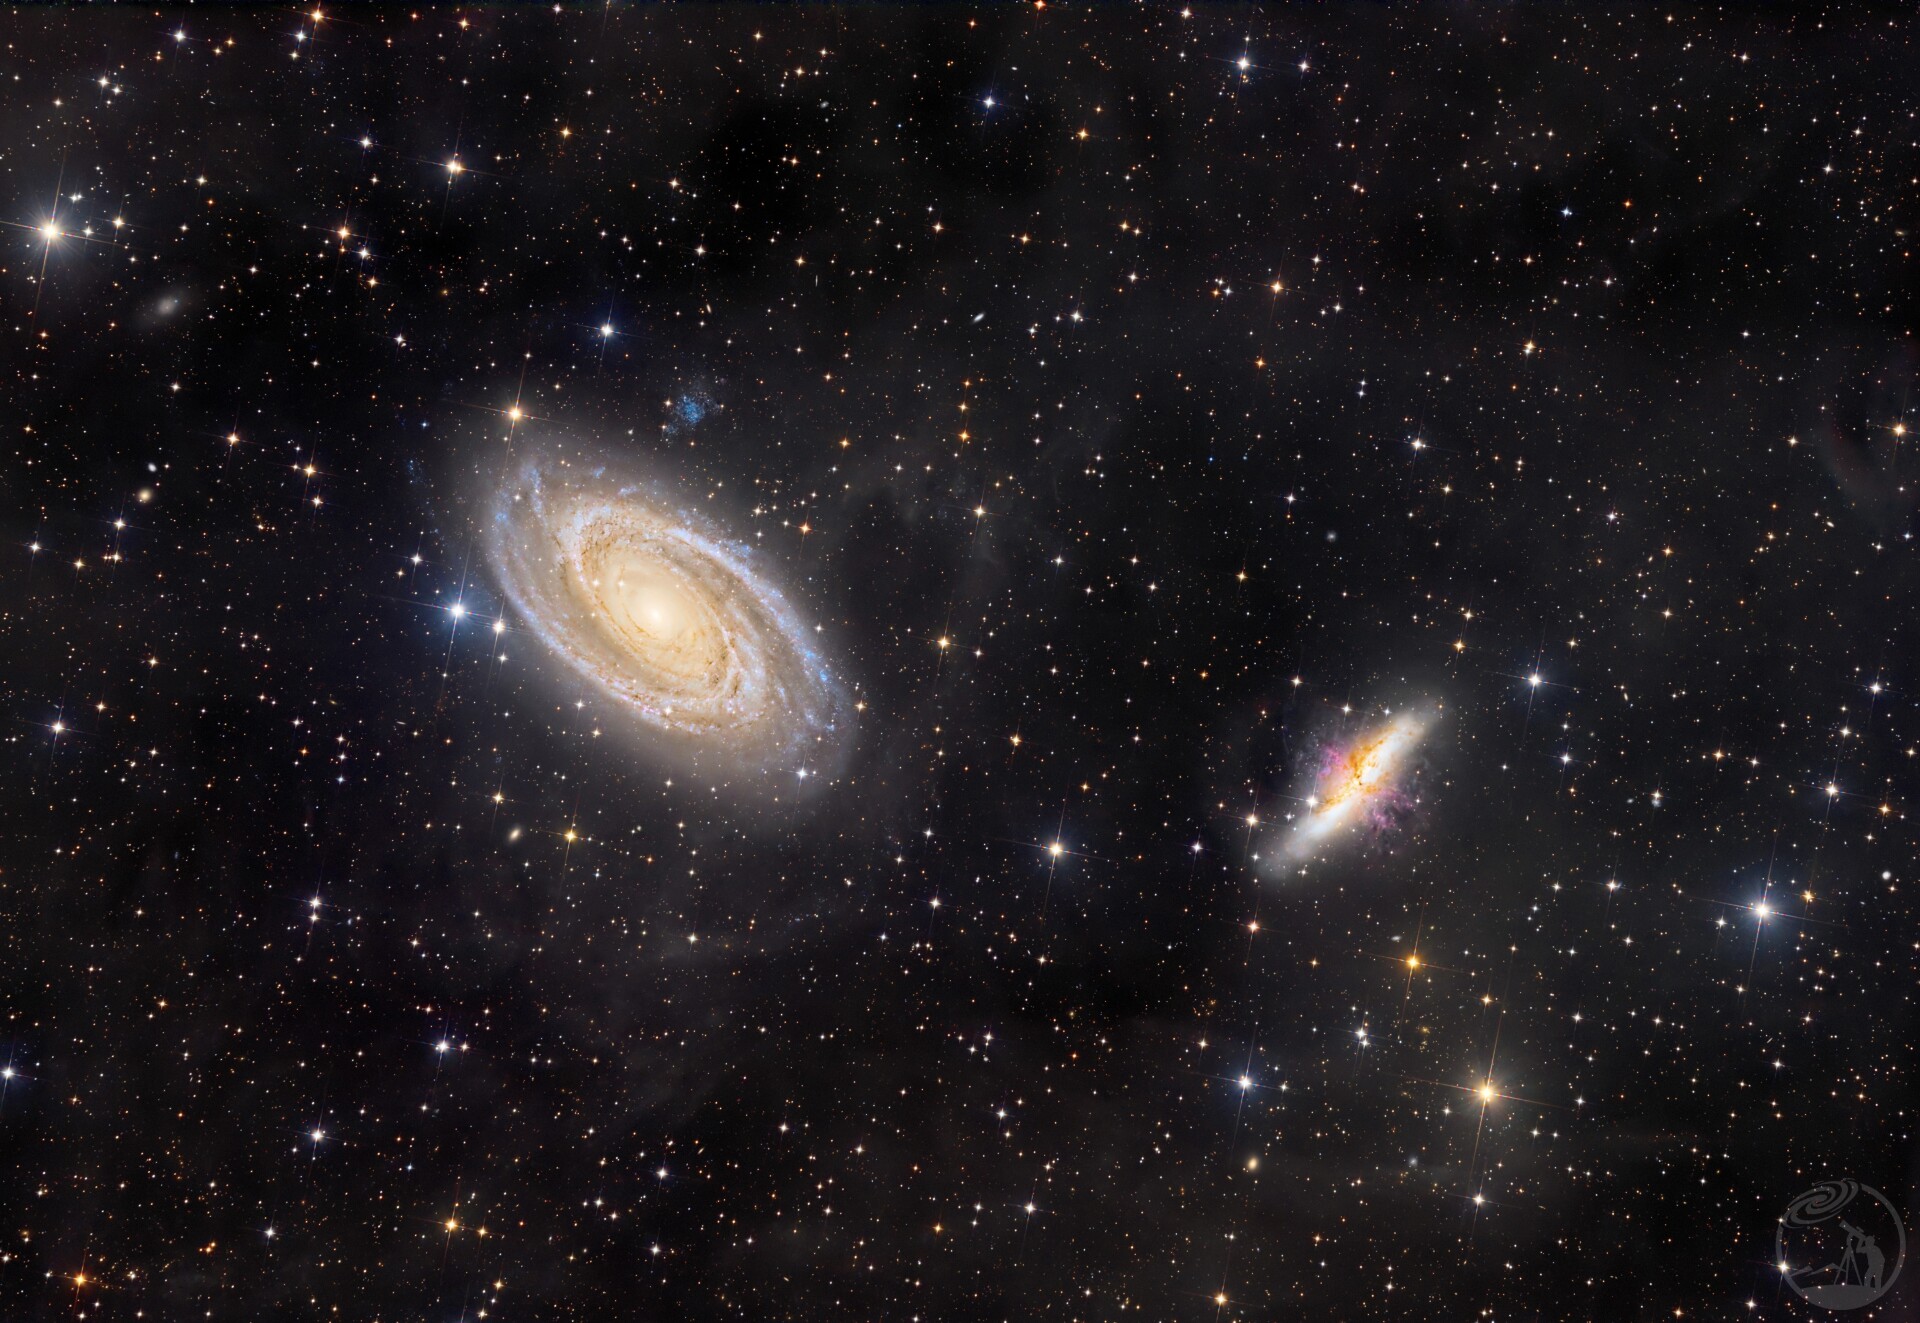 M81&M82